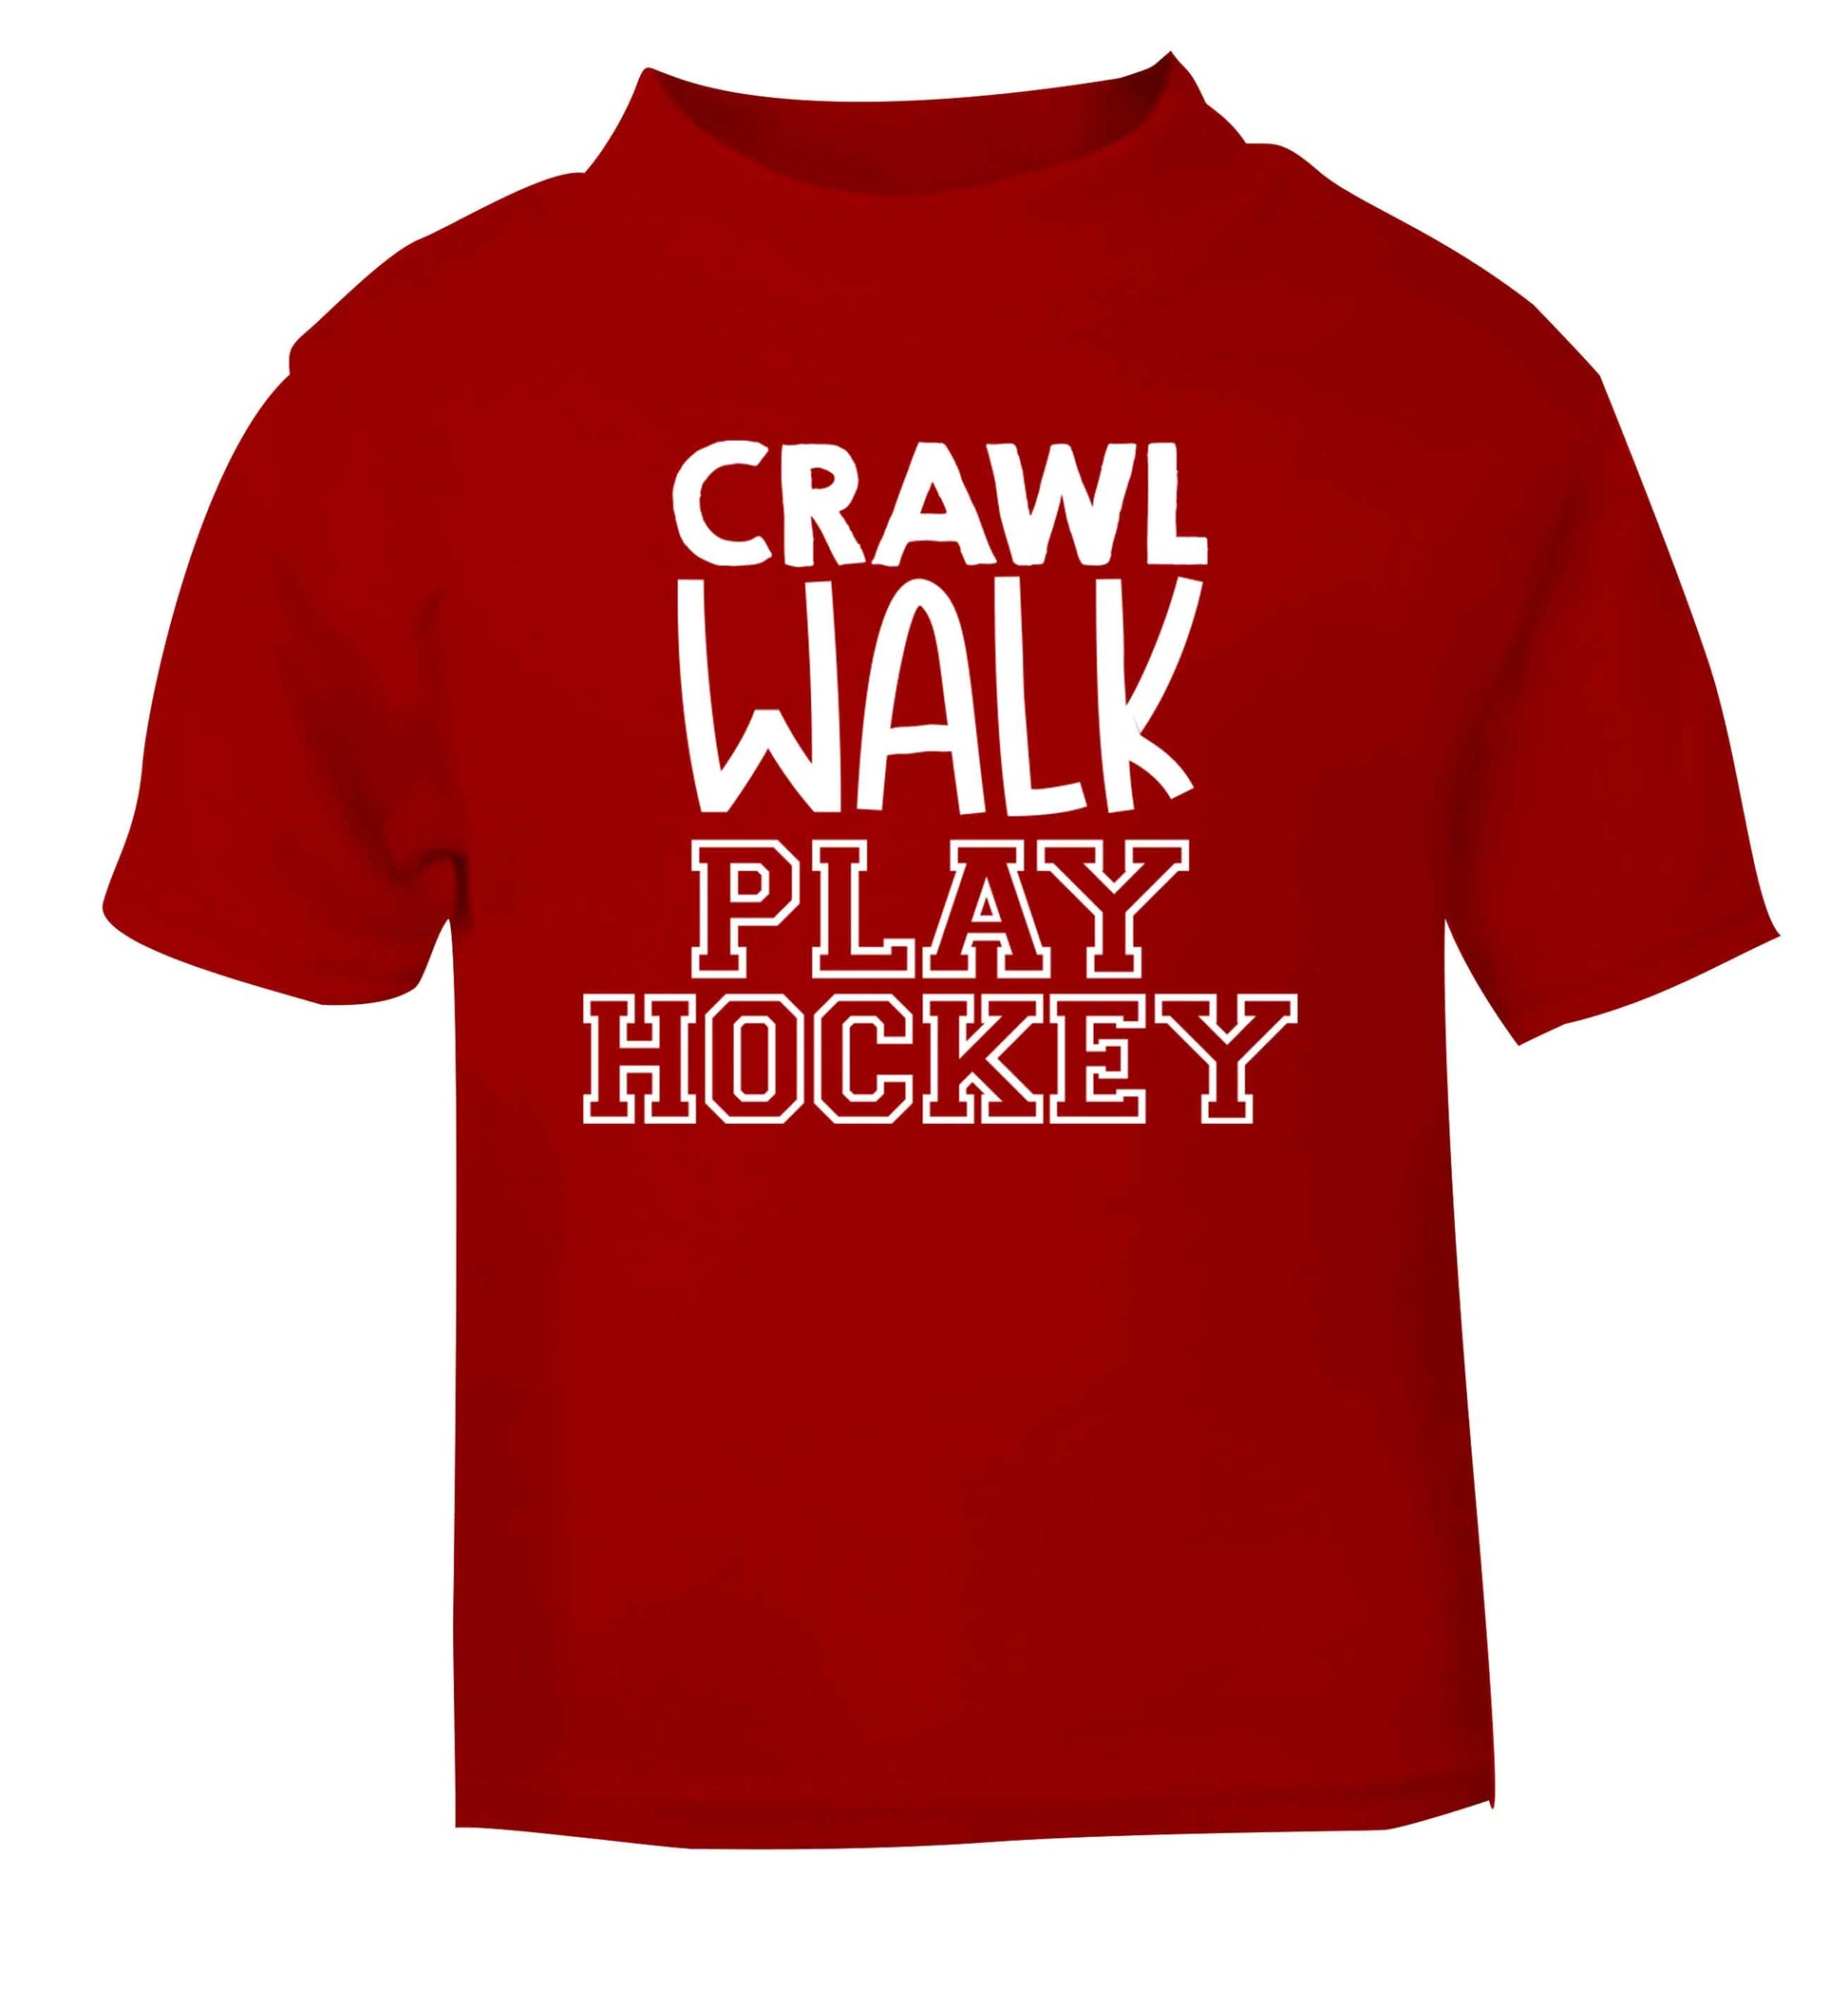 Crawl walk play hockey red Baby Toddler Tshirt 2 Years